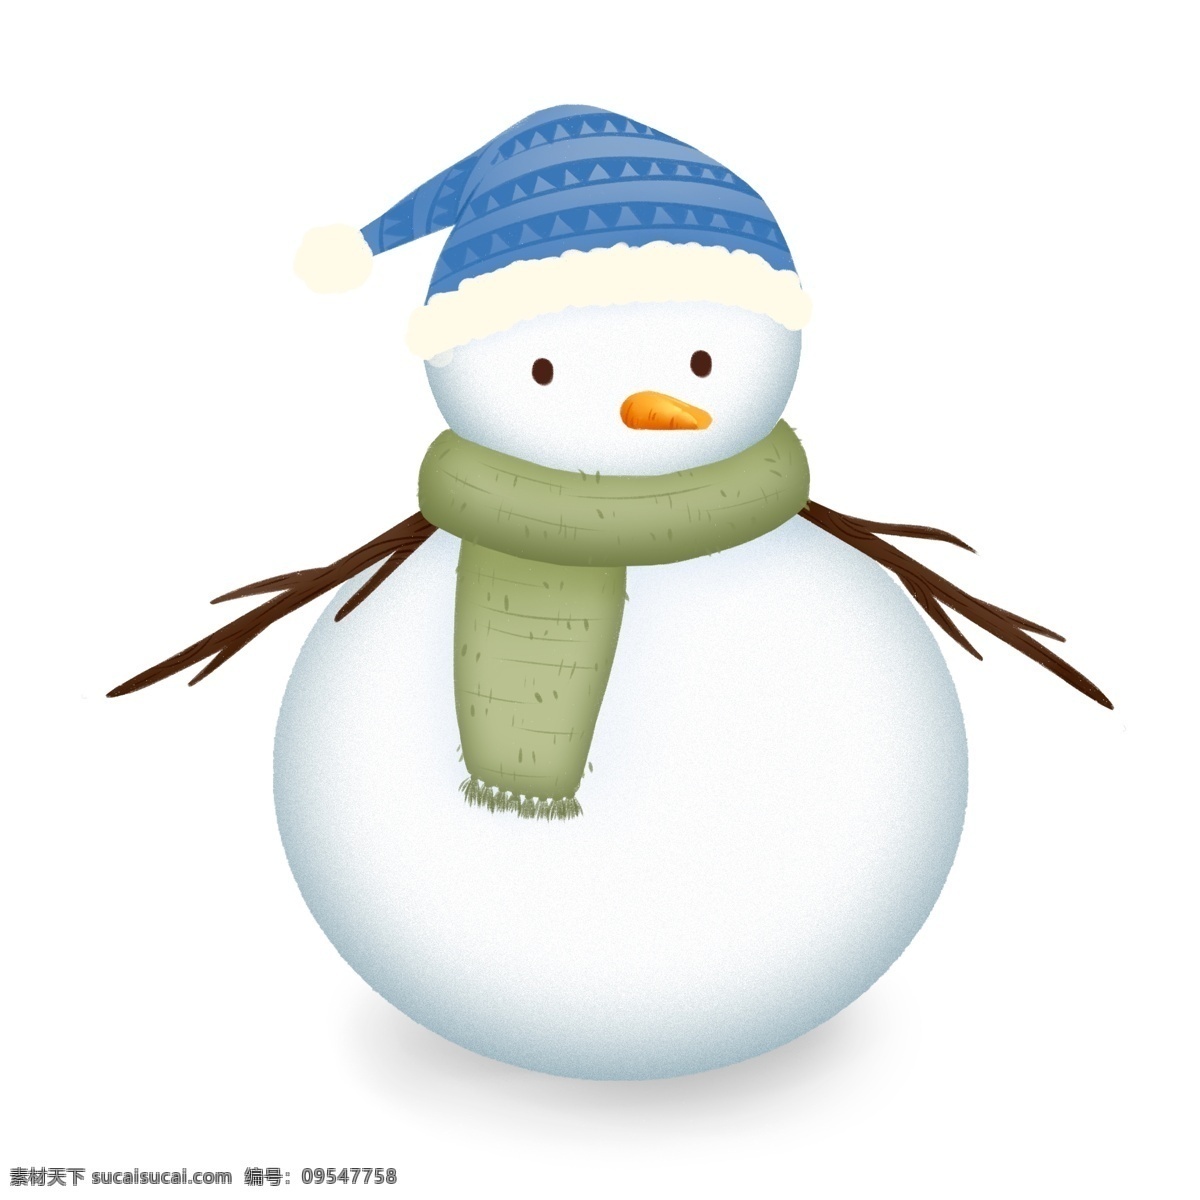 冬至 清新 可爱 雪人 元素 插画 卡通 传统节气 毛线帽 树杈 围巾